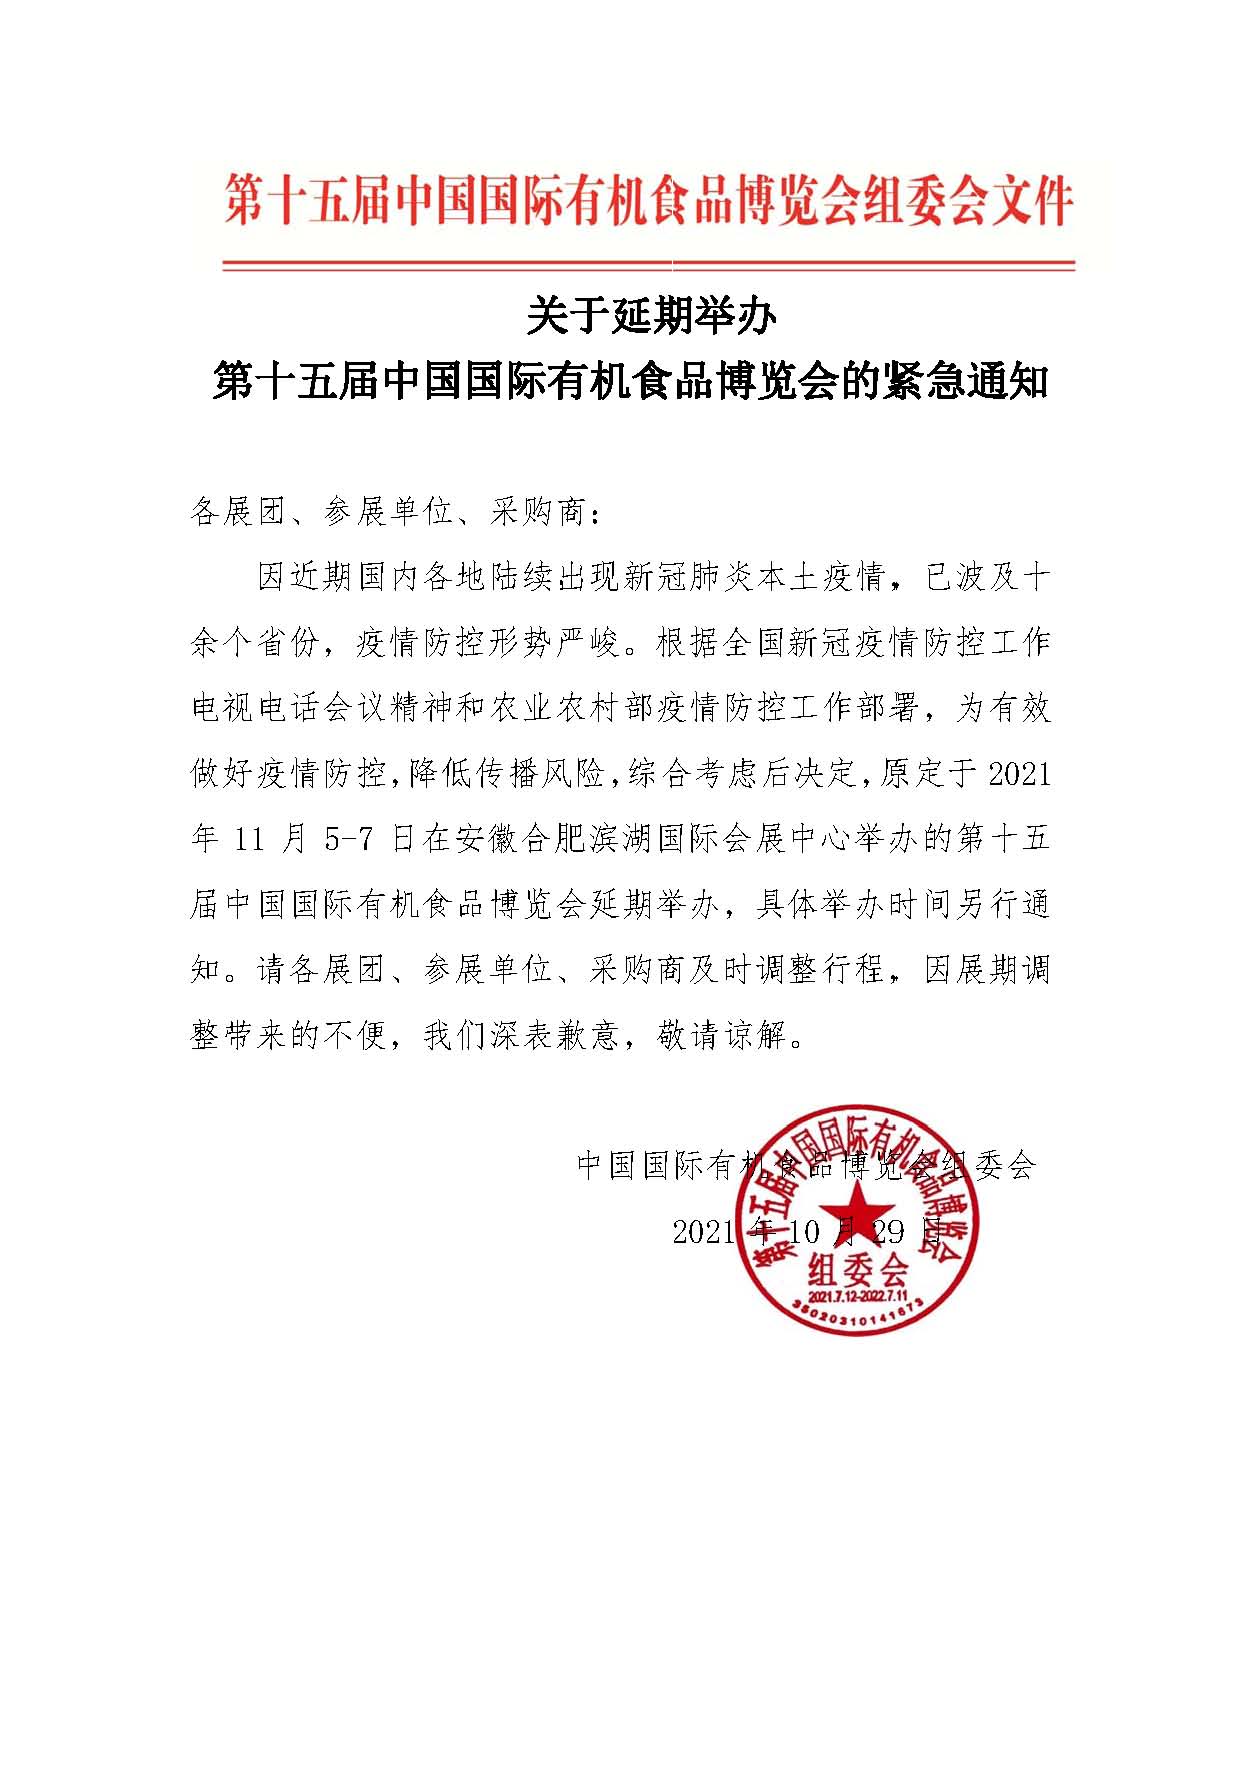 关于延期举办第十五届中国国际有机食品博览会的紧急通知.jpg